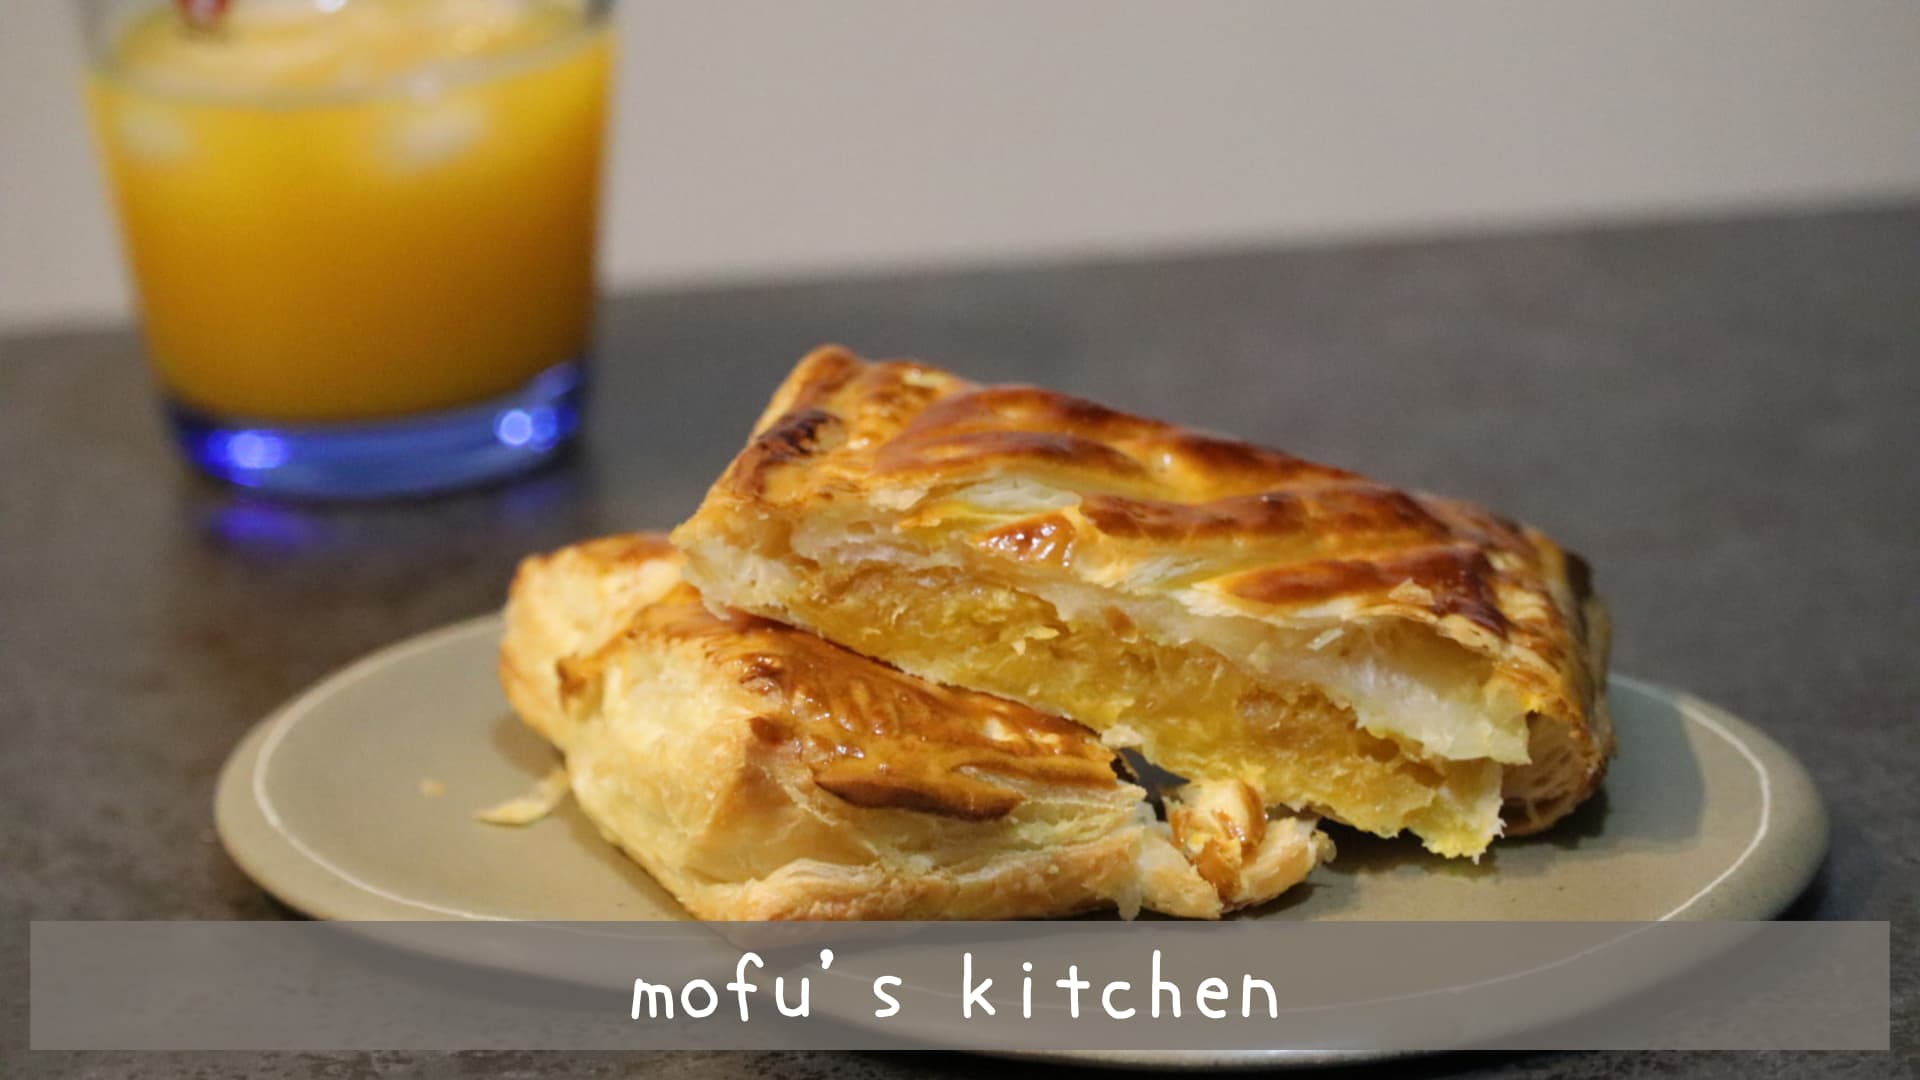 mofu's kitchen